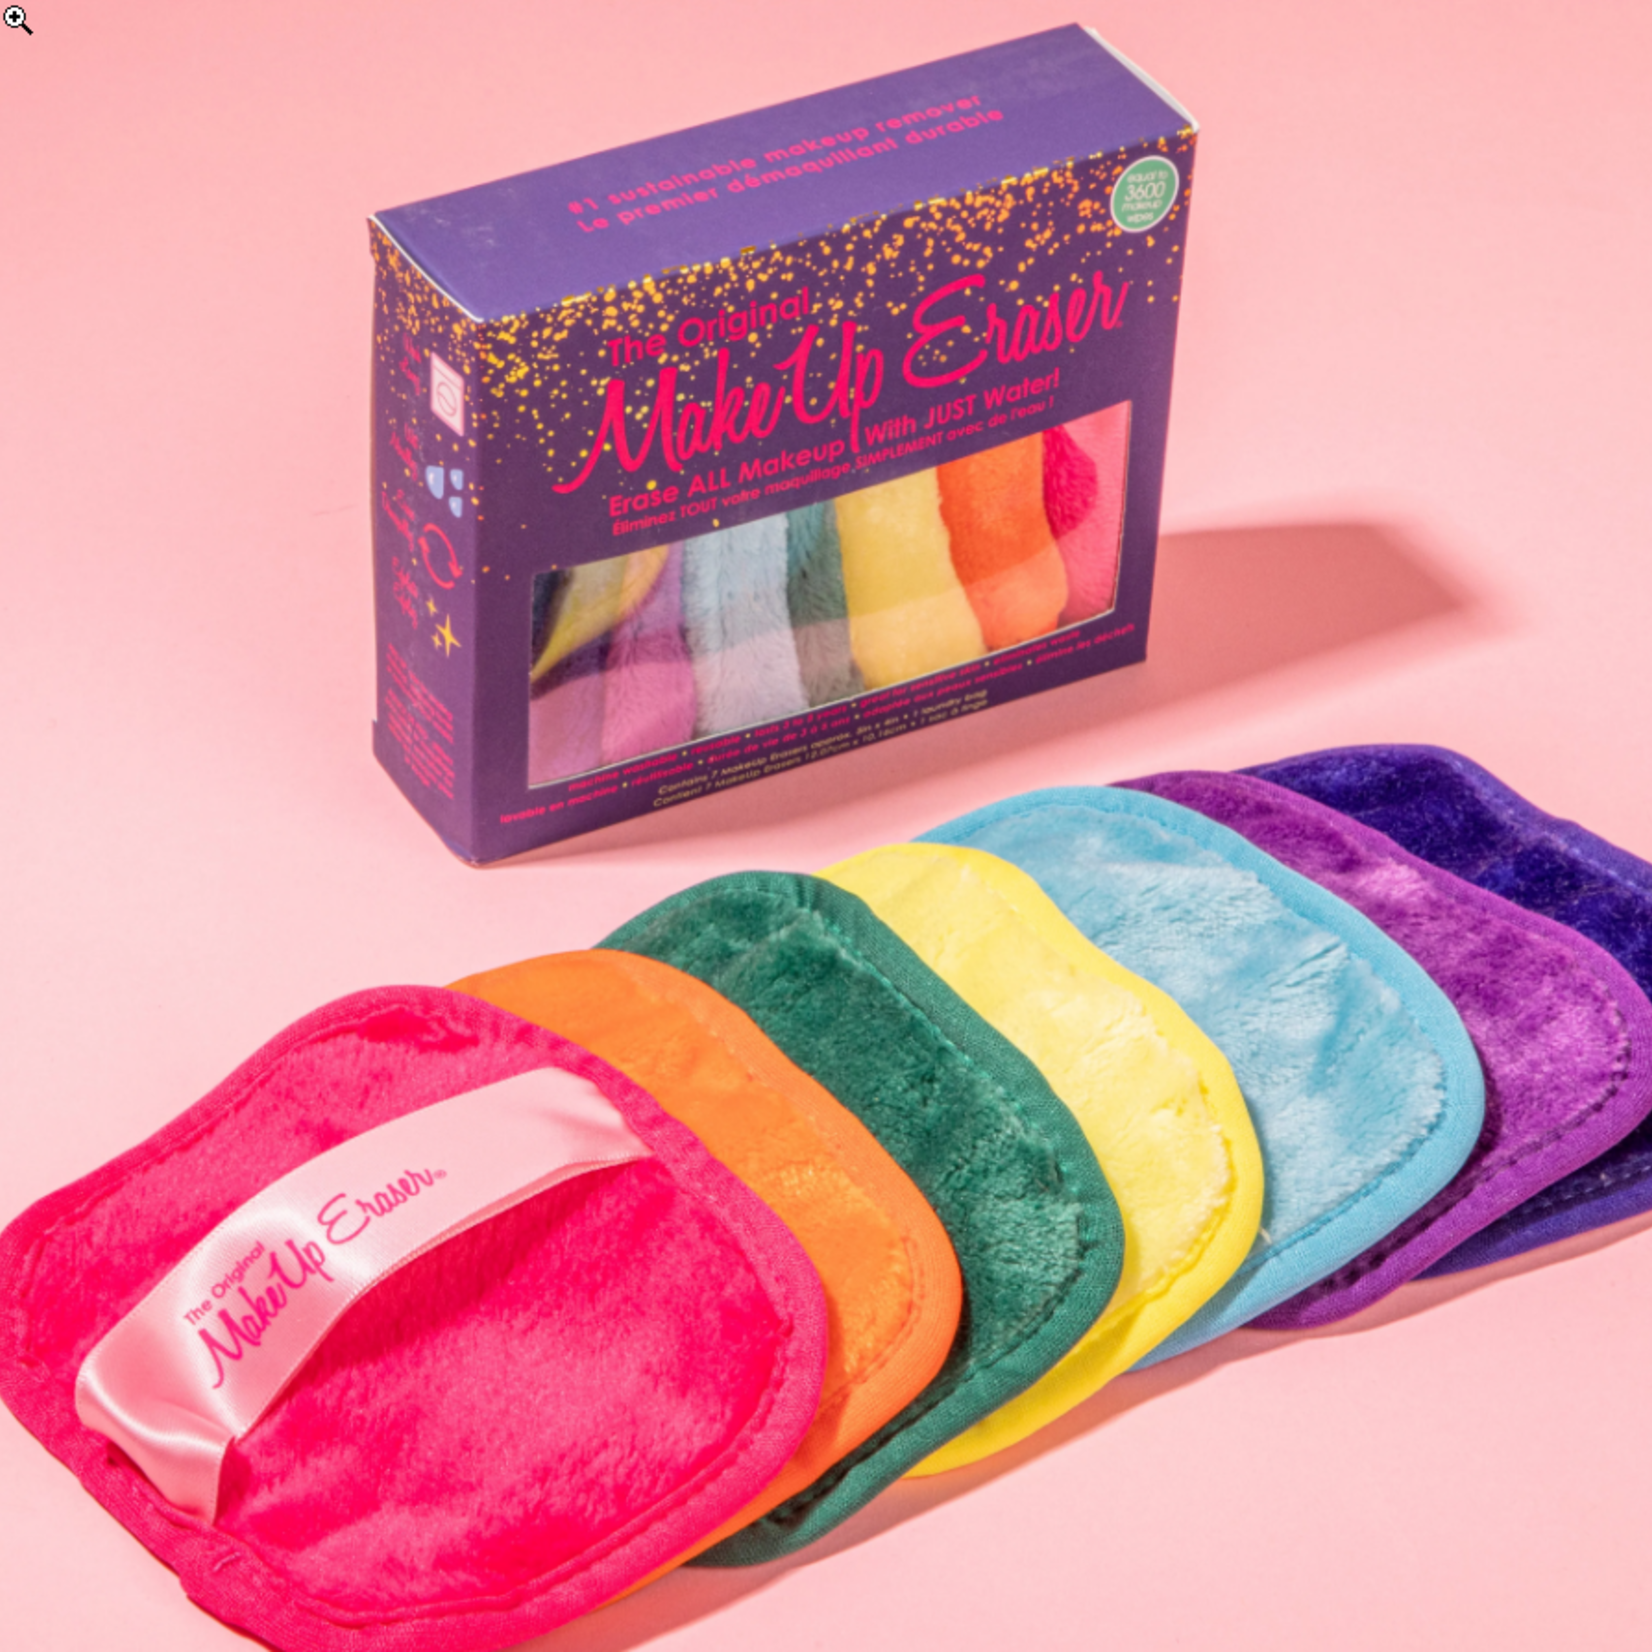 Orginal Makeup Eraser Bold Colors Makeup Eraser 7 Day Set